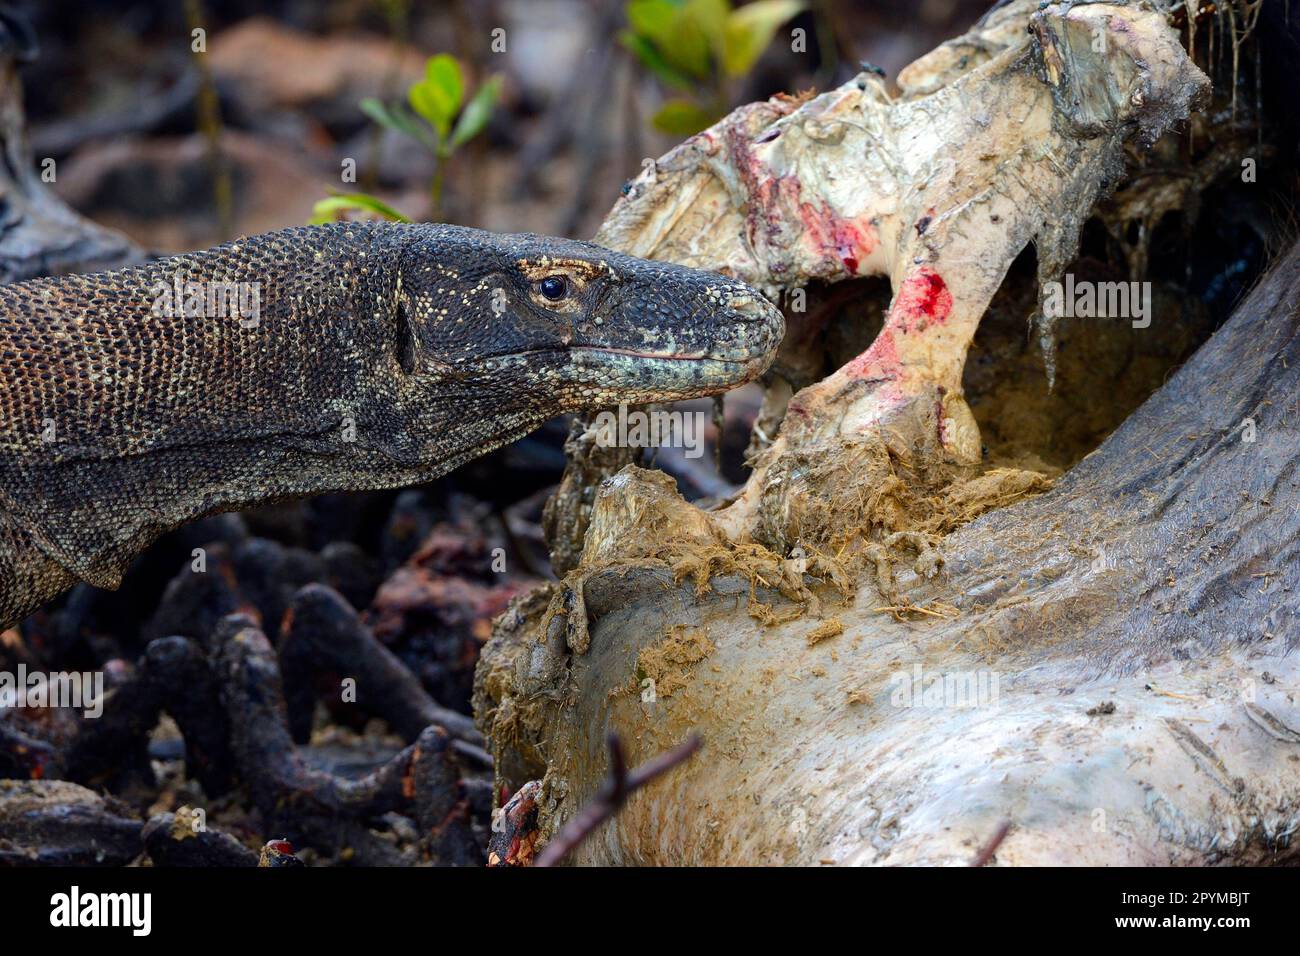 Komodo dragon (Varanus komodoensis), on buffalo carcass in mangrove area, Rinca Island, Indonesia Stock Photo